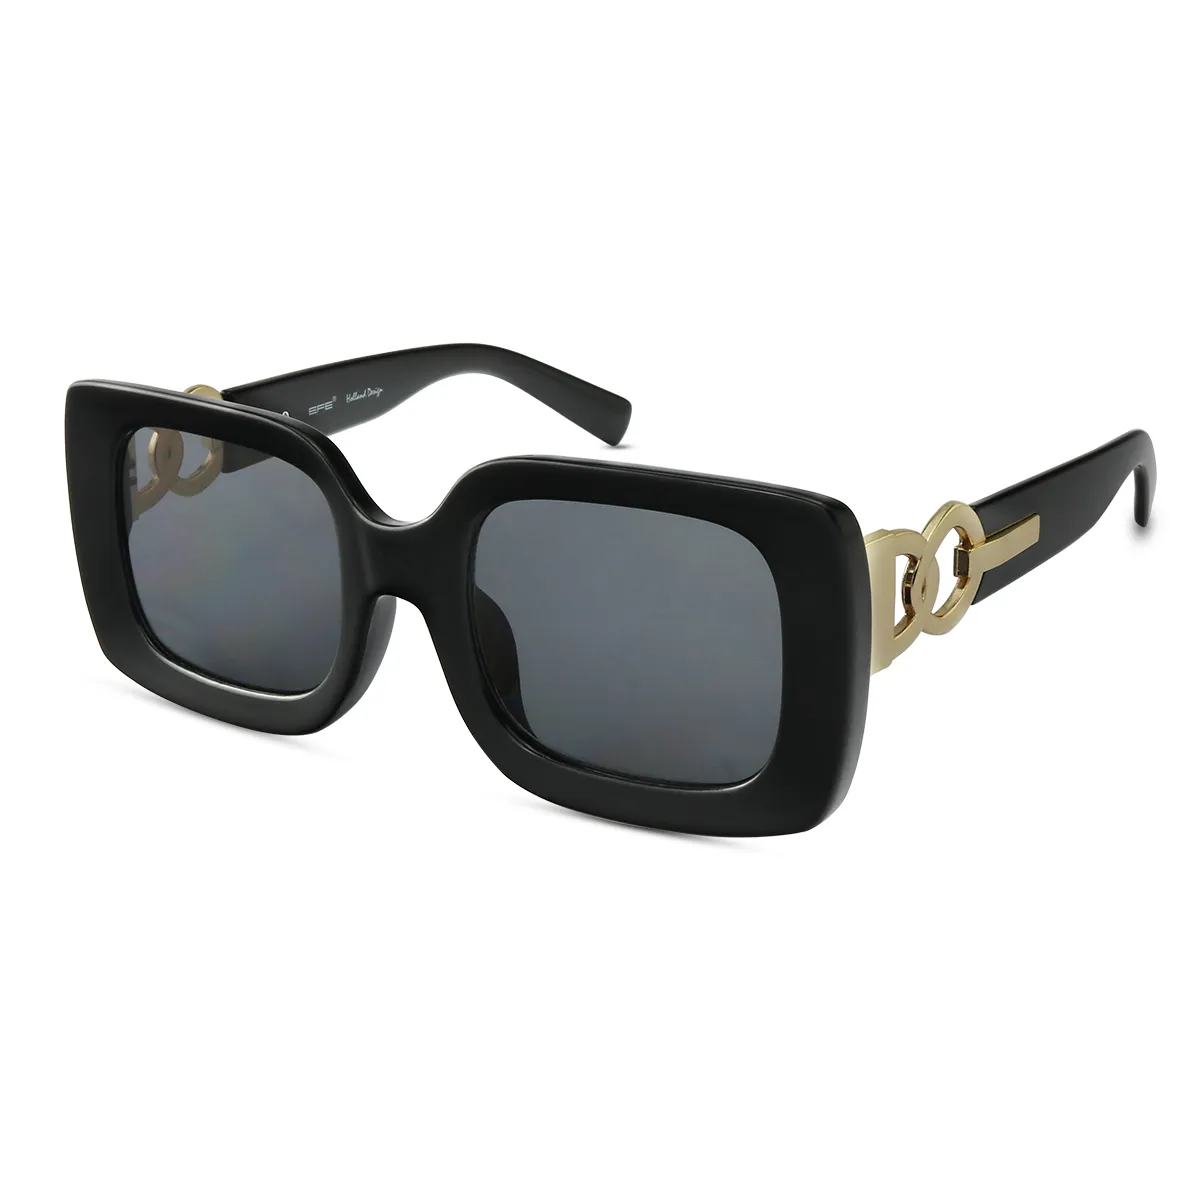 Fashion Square Black Sunglasses for Women